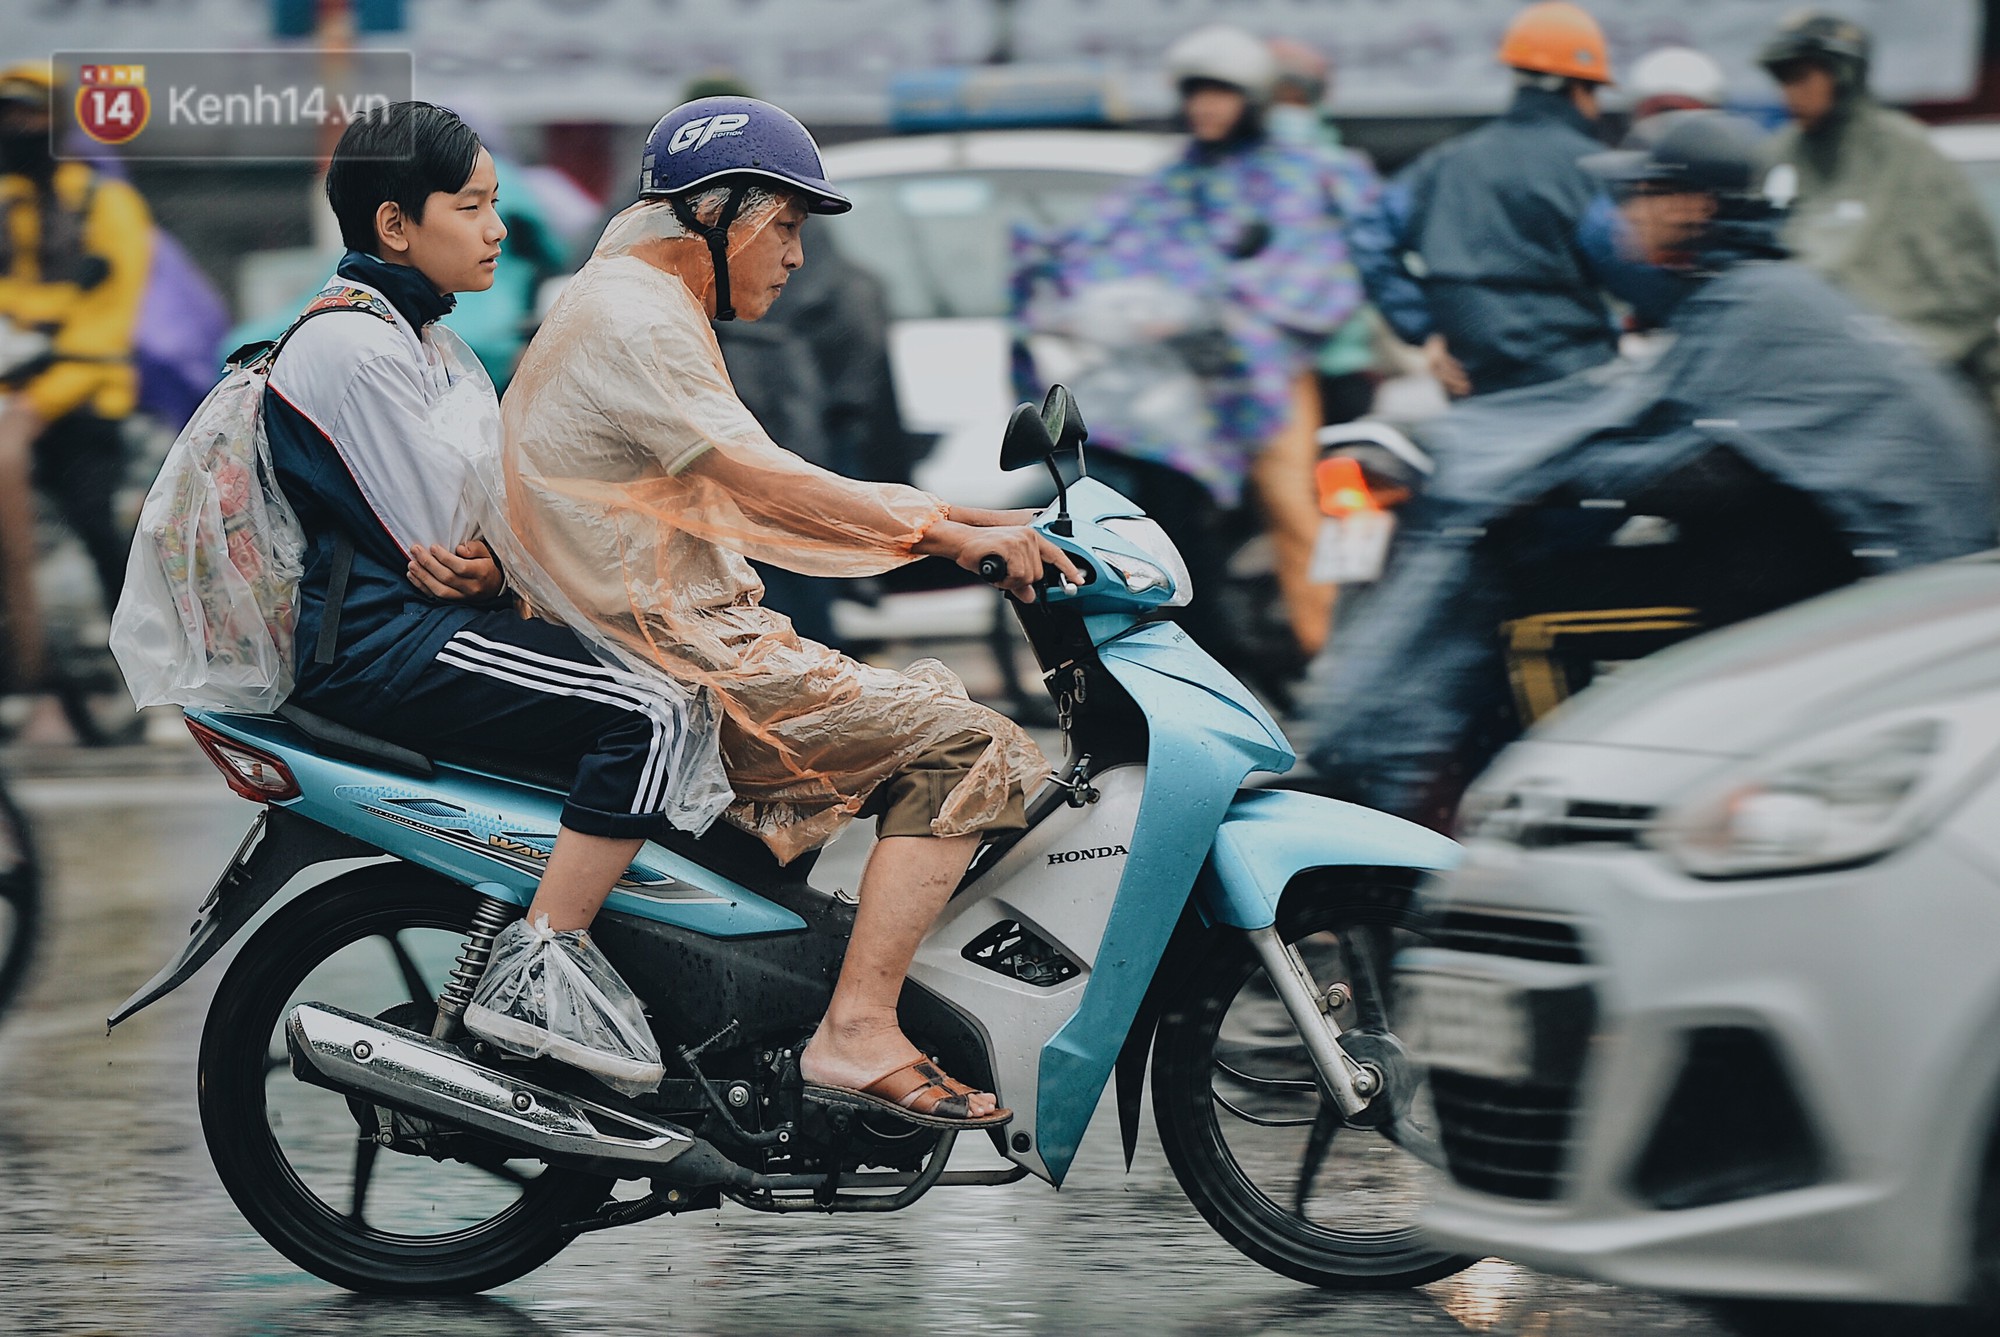 Chùm ảnh: Sau một đêm trở gió Hà Nội mưa lạnh xuống đến 17 độ C, người dân co ro ra đường-1